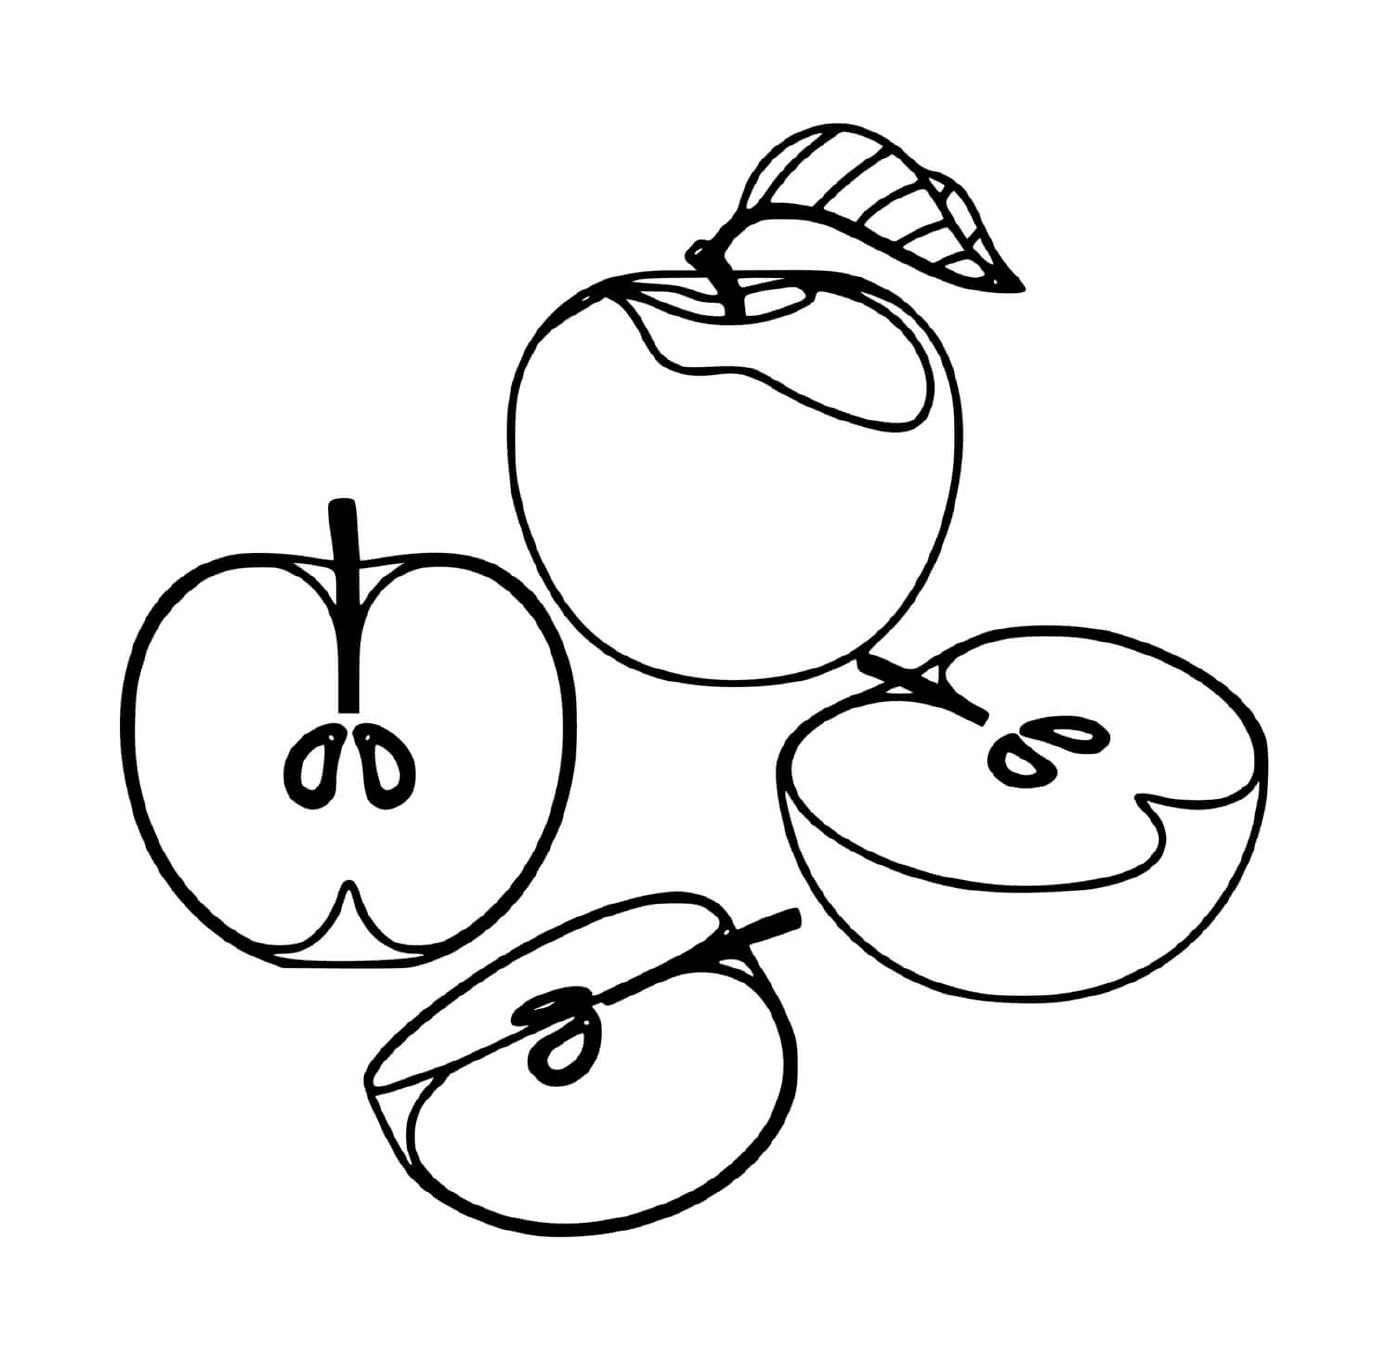   Pommes délicieuses et juteuses 